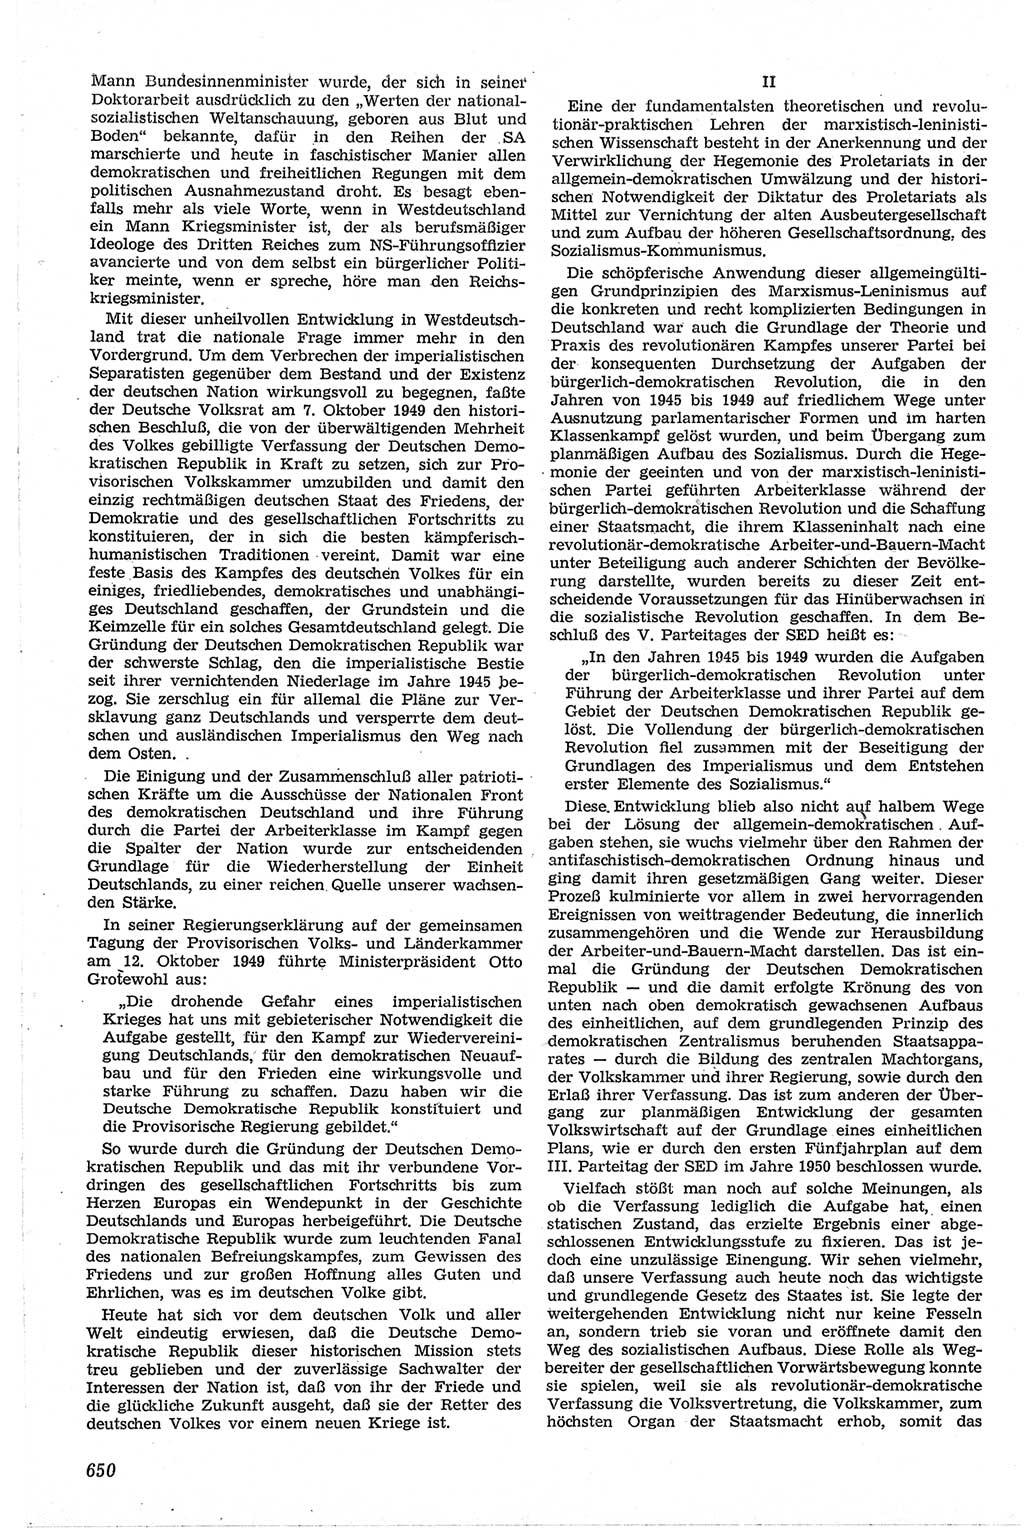 Neue Justiz (NJ), Zeitschrift für Recht und Rechtswissenschaft [Deutsche Demokratische Republik (DDR)], 13. Jahrgang 1959, Seite 650 (NJ DDR 1959, S. 650)